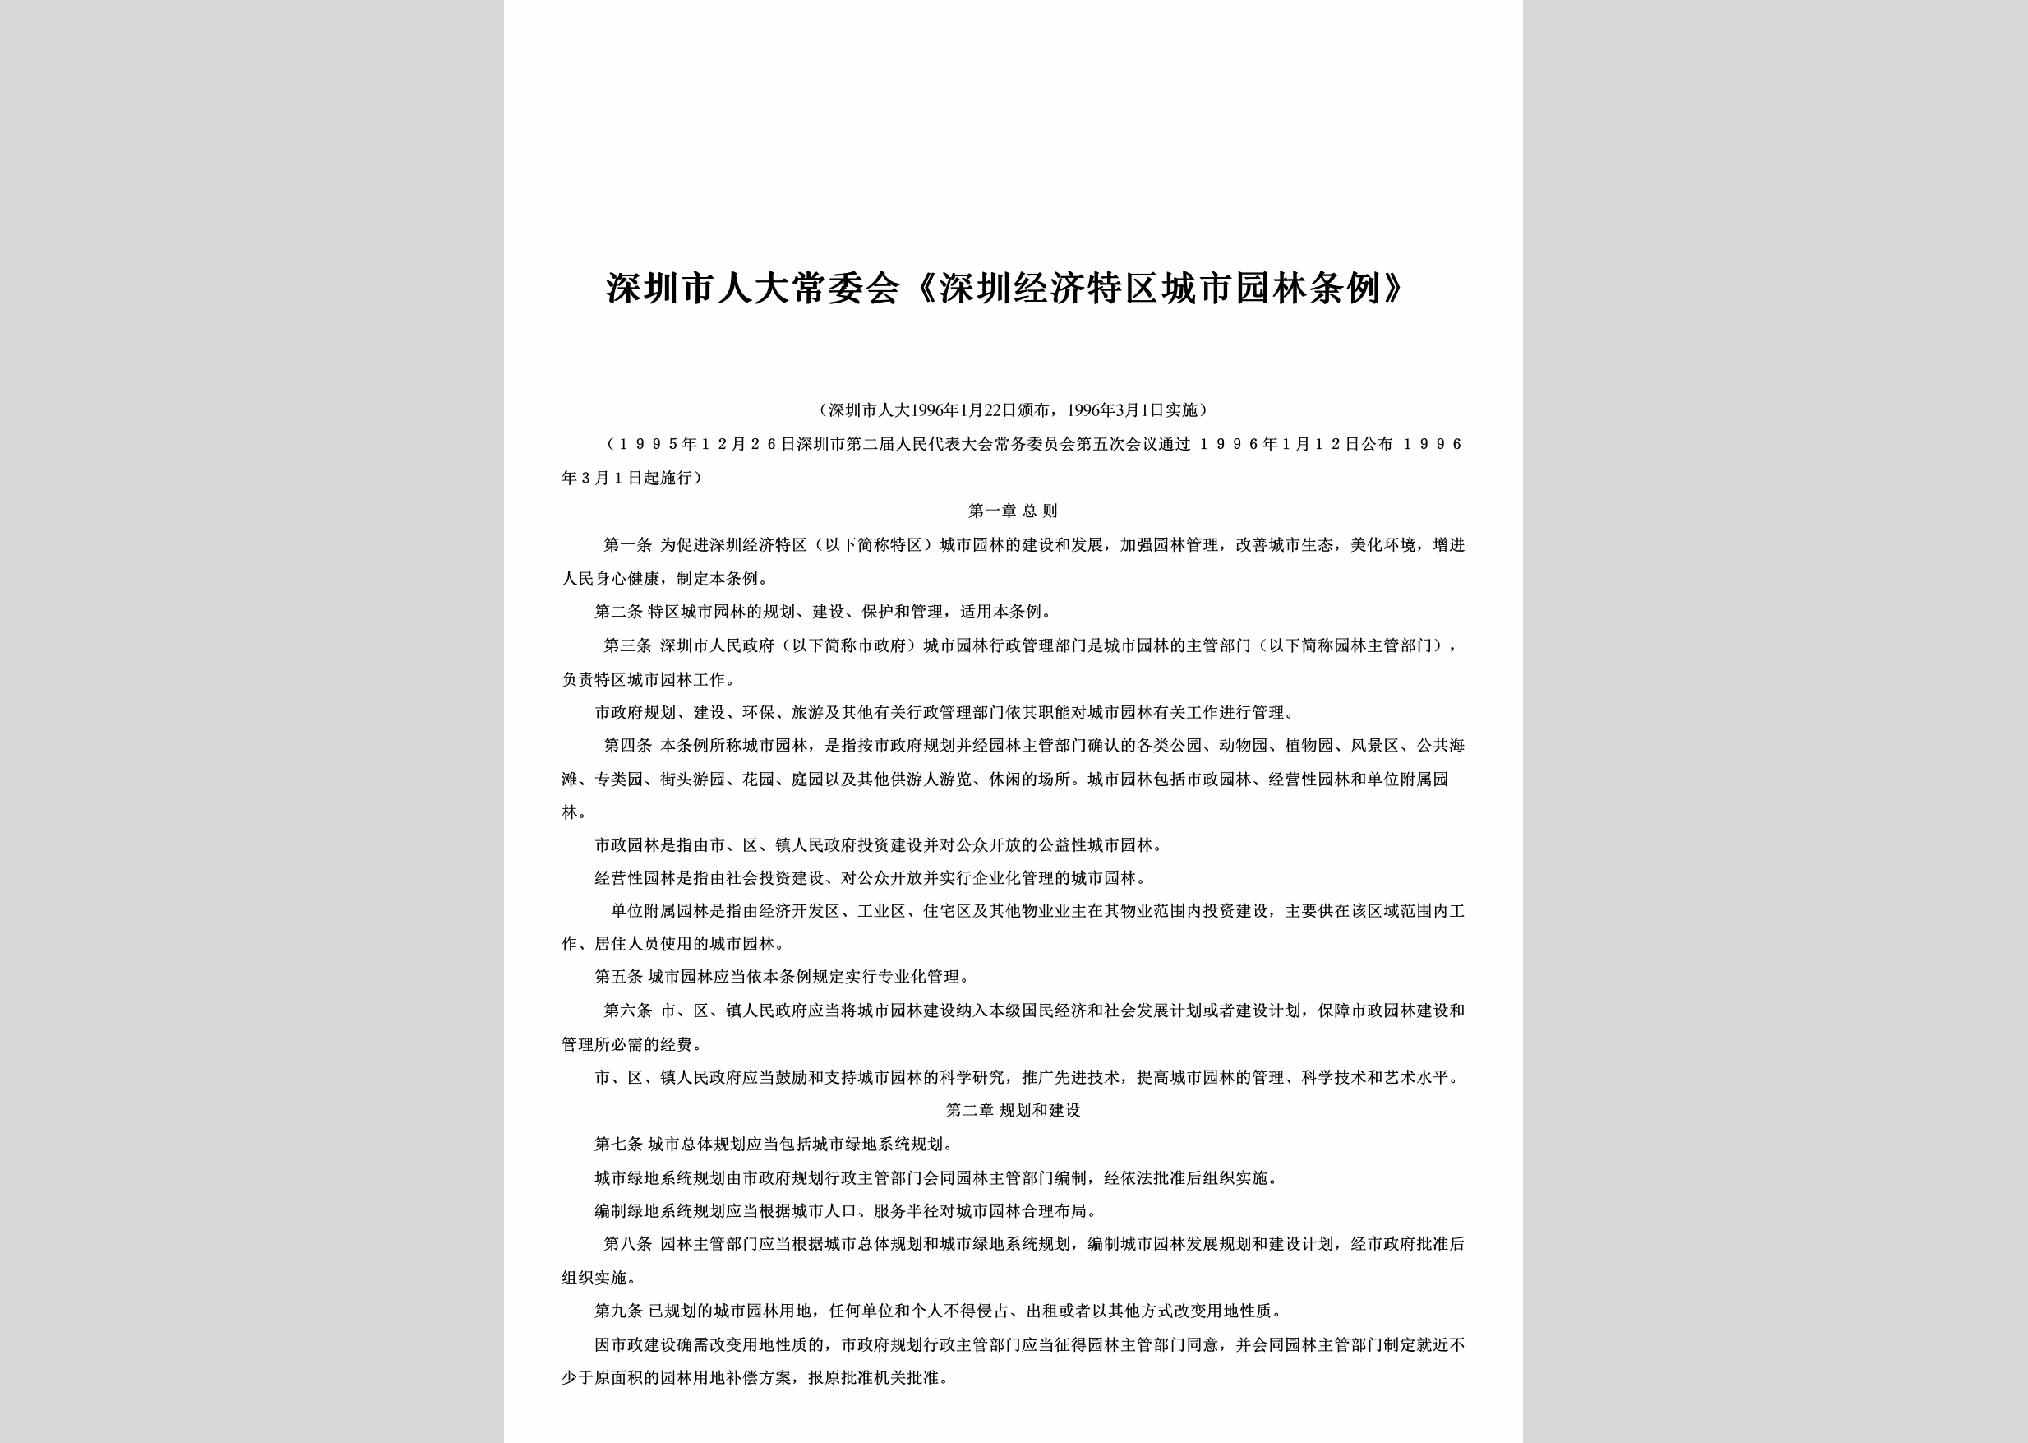 GD-TQCSYLTL-1996：《深圳经济特区城市园林条例》